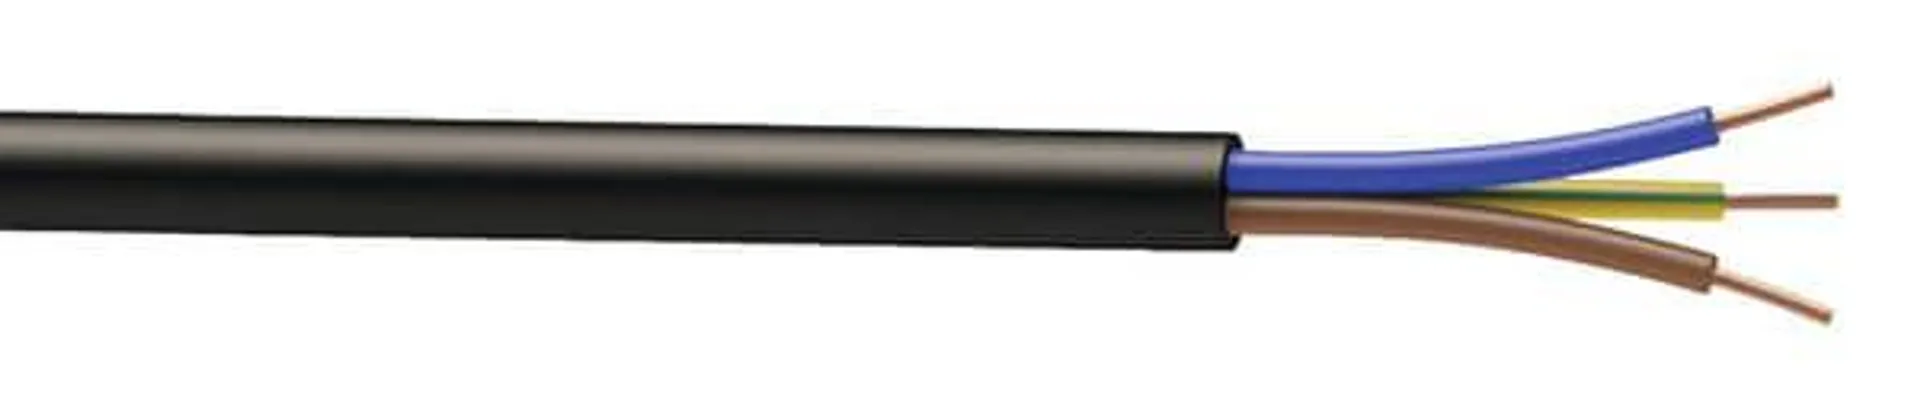 Câble électrique R2V 3G6 mm² noir - 25 m - Nexans